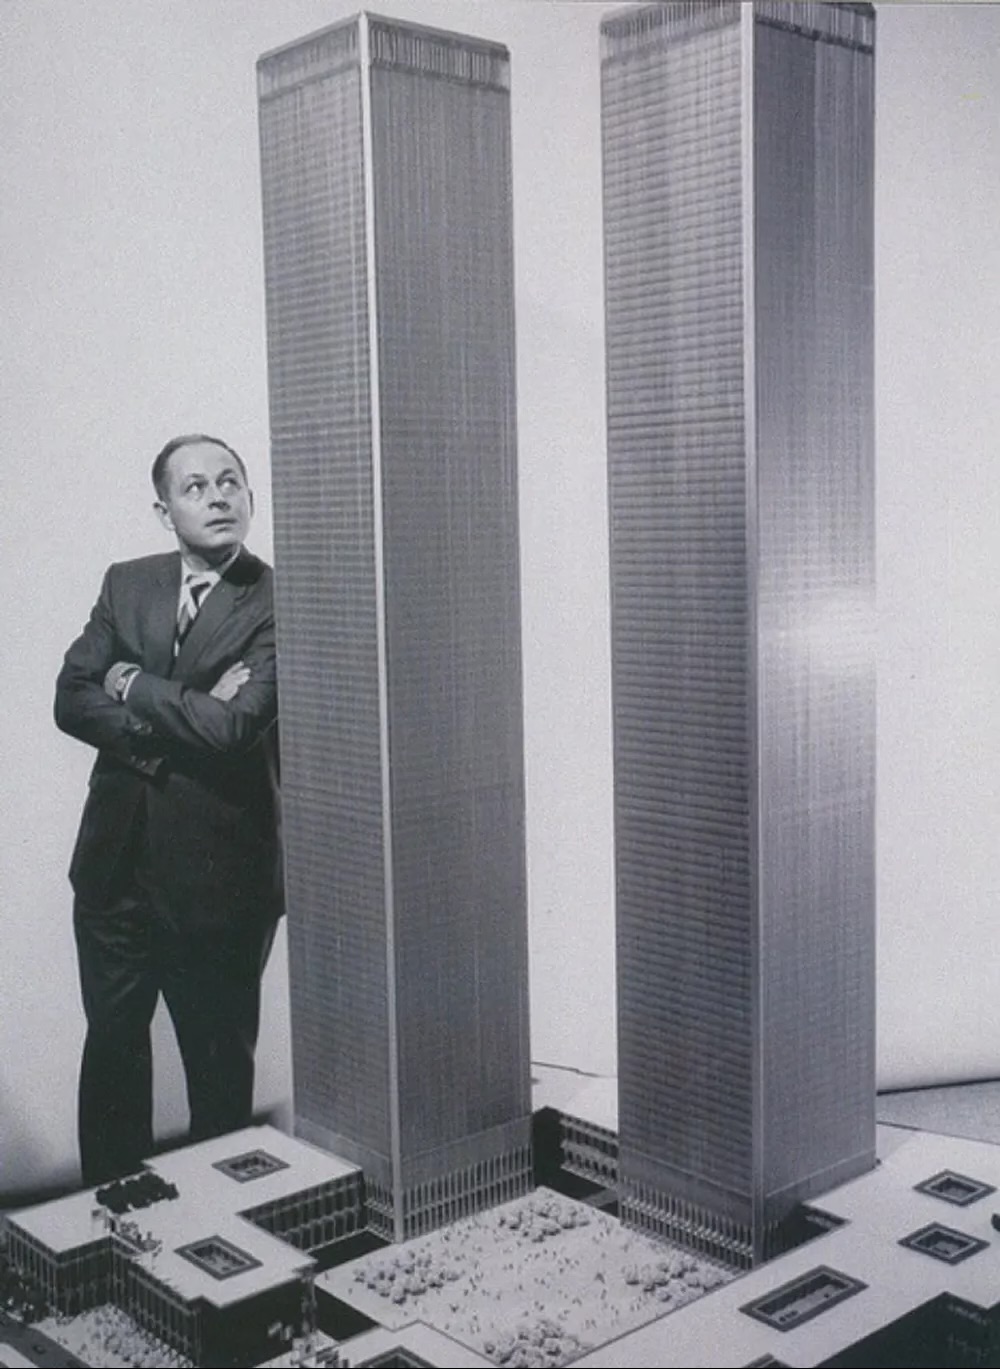 World Trade Center trong quá trình xây dựng thông qua những bức ảnh hấp dẫn, năm 1966 - 1979